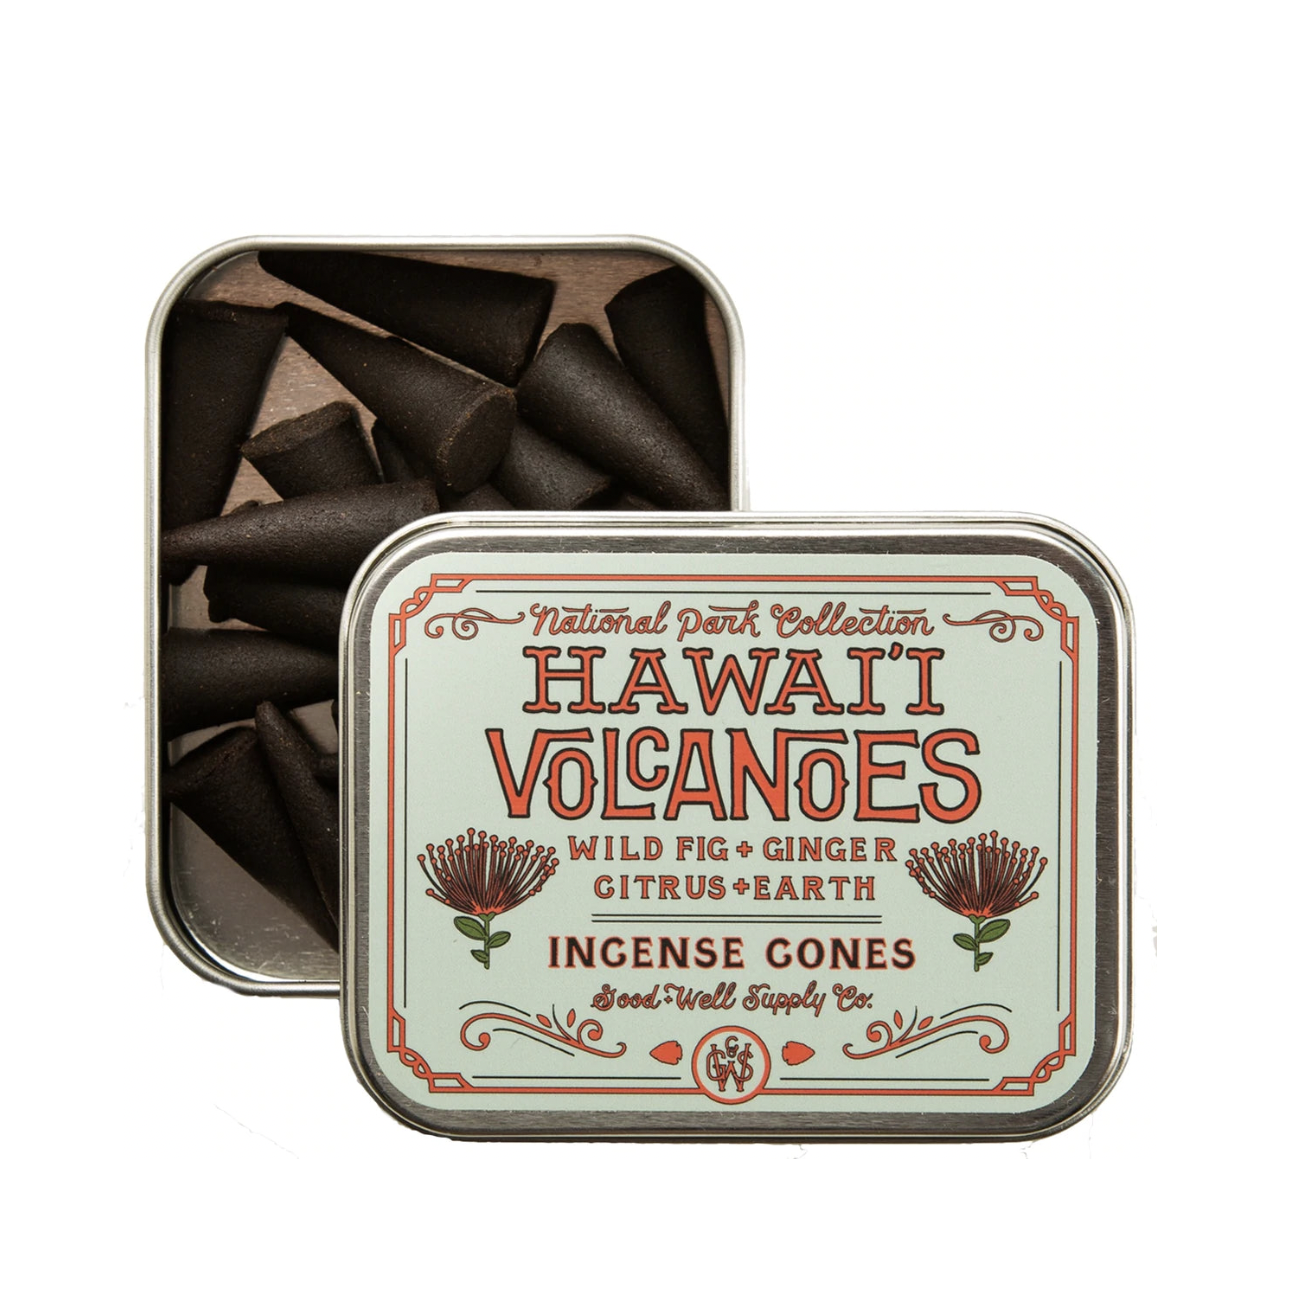 Hawai'i Volcanoes Incense Cones